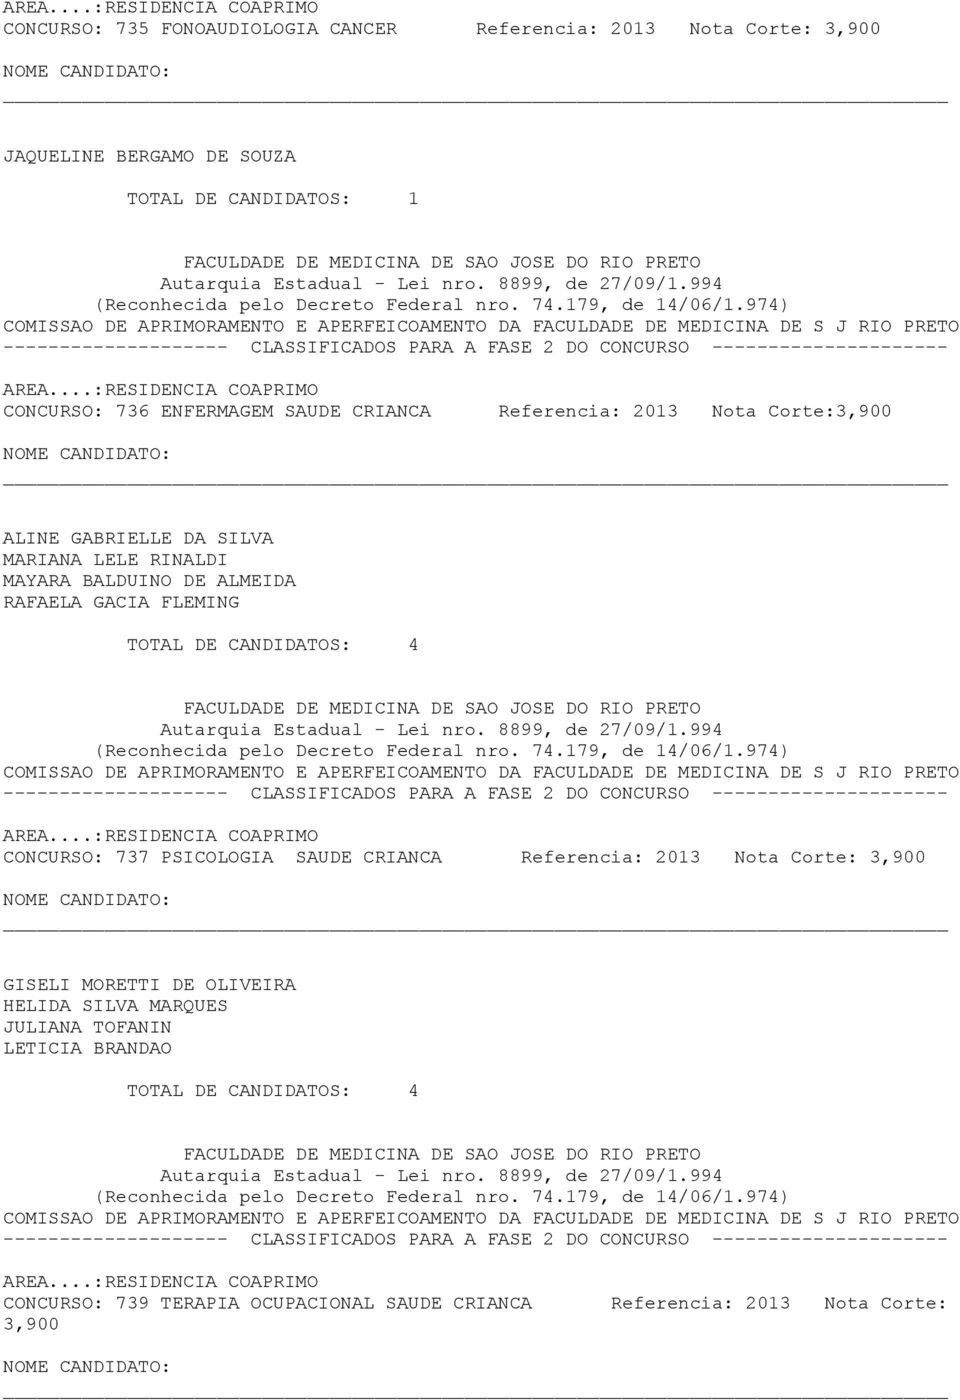 DE CANDIDATOS: 4 CONCURSO: 737 PSICOLOGIA SAUDE CRIANCA Referencia: 2013 Nota Corte: 3,900 GISELI MORETTI DE OLIVEIRA HELIDA SILVA